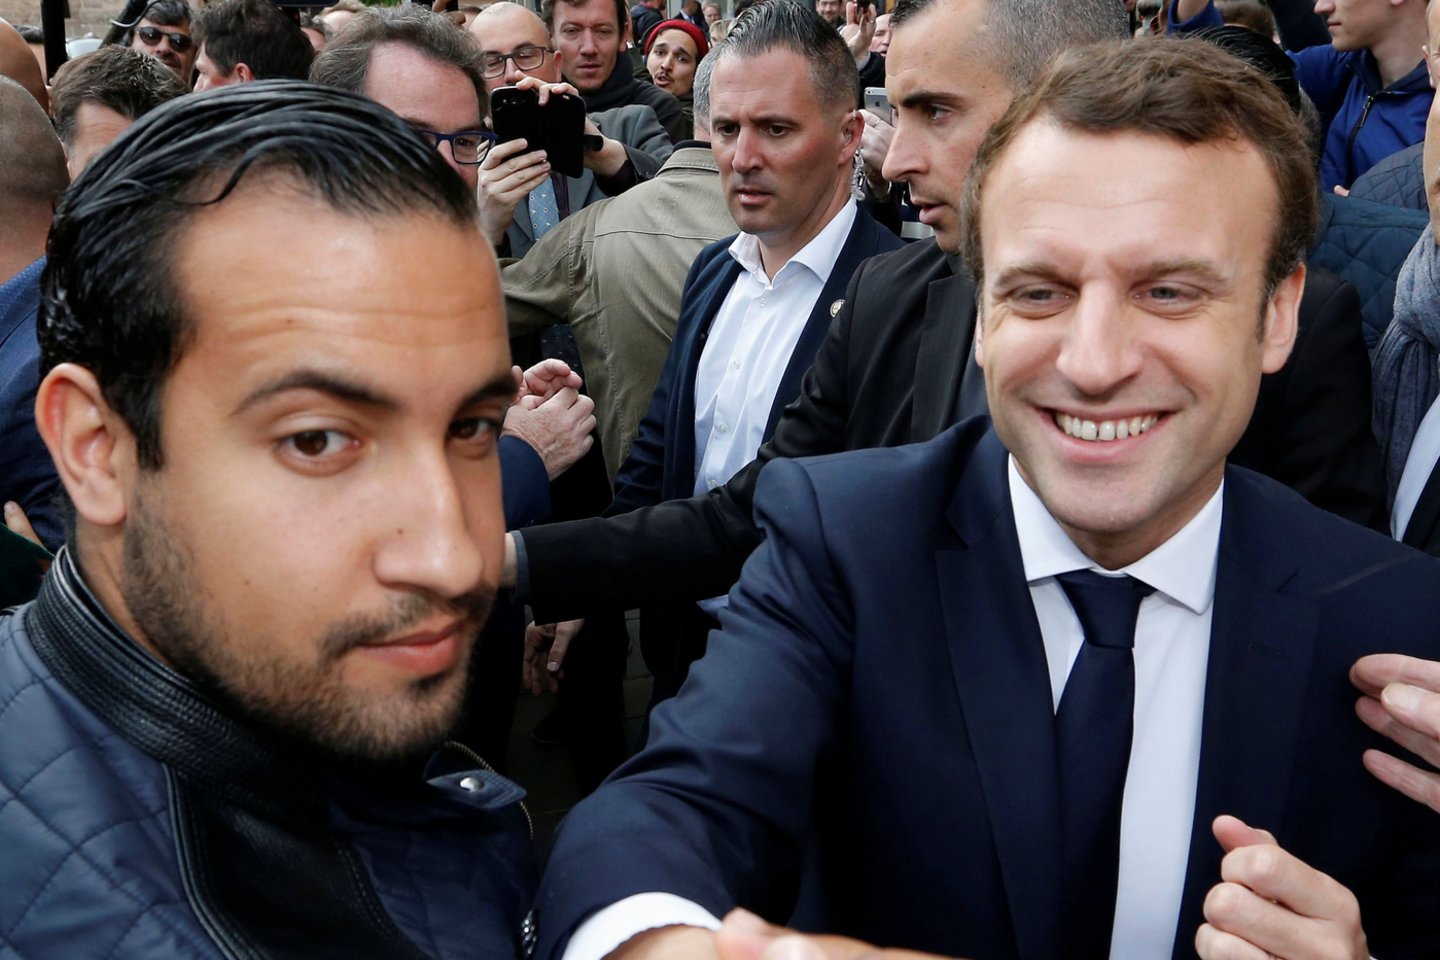 Buvęs vienas iš Prancūzijos prezidento Emmanuel Macrono apsaugos vadovų pripažino „suklydęs“, kai dalyvavo demonstracijoje, per kurią buvo nufilmuotas mušantis kelis Gegužės 1-osios protesto dalyvius. <br>Reuters/Scanpix nuotr.